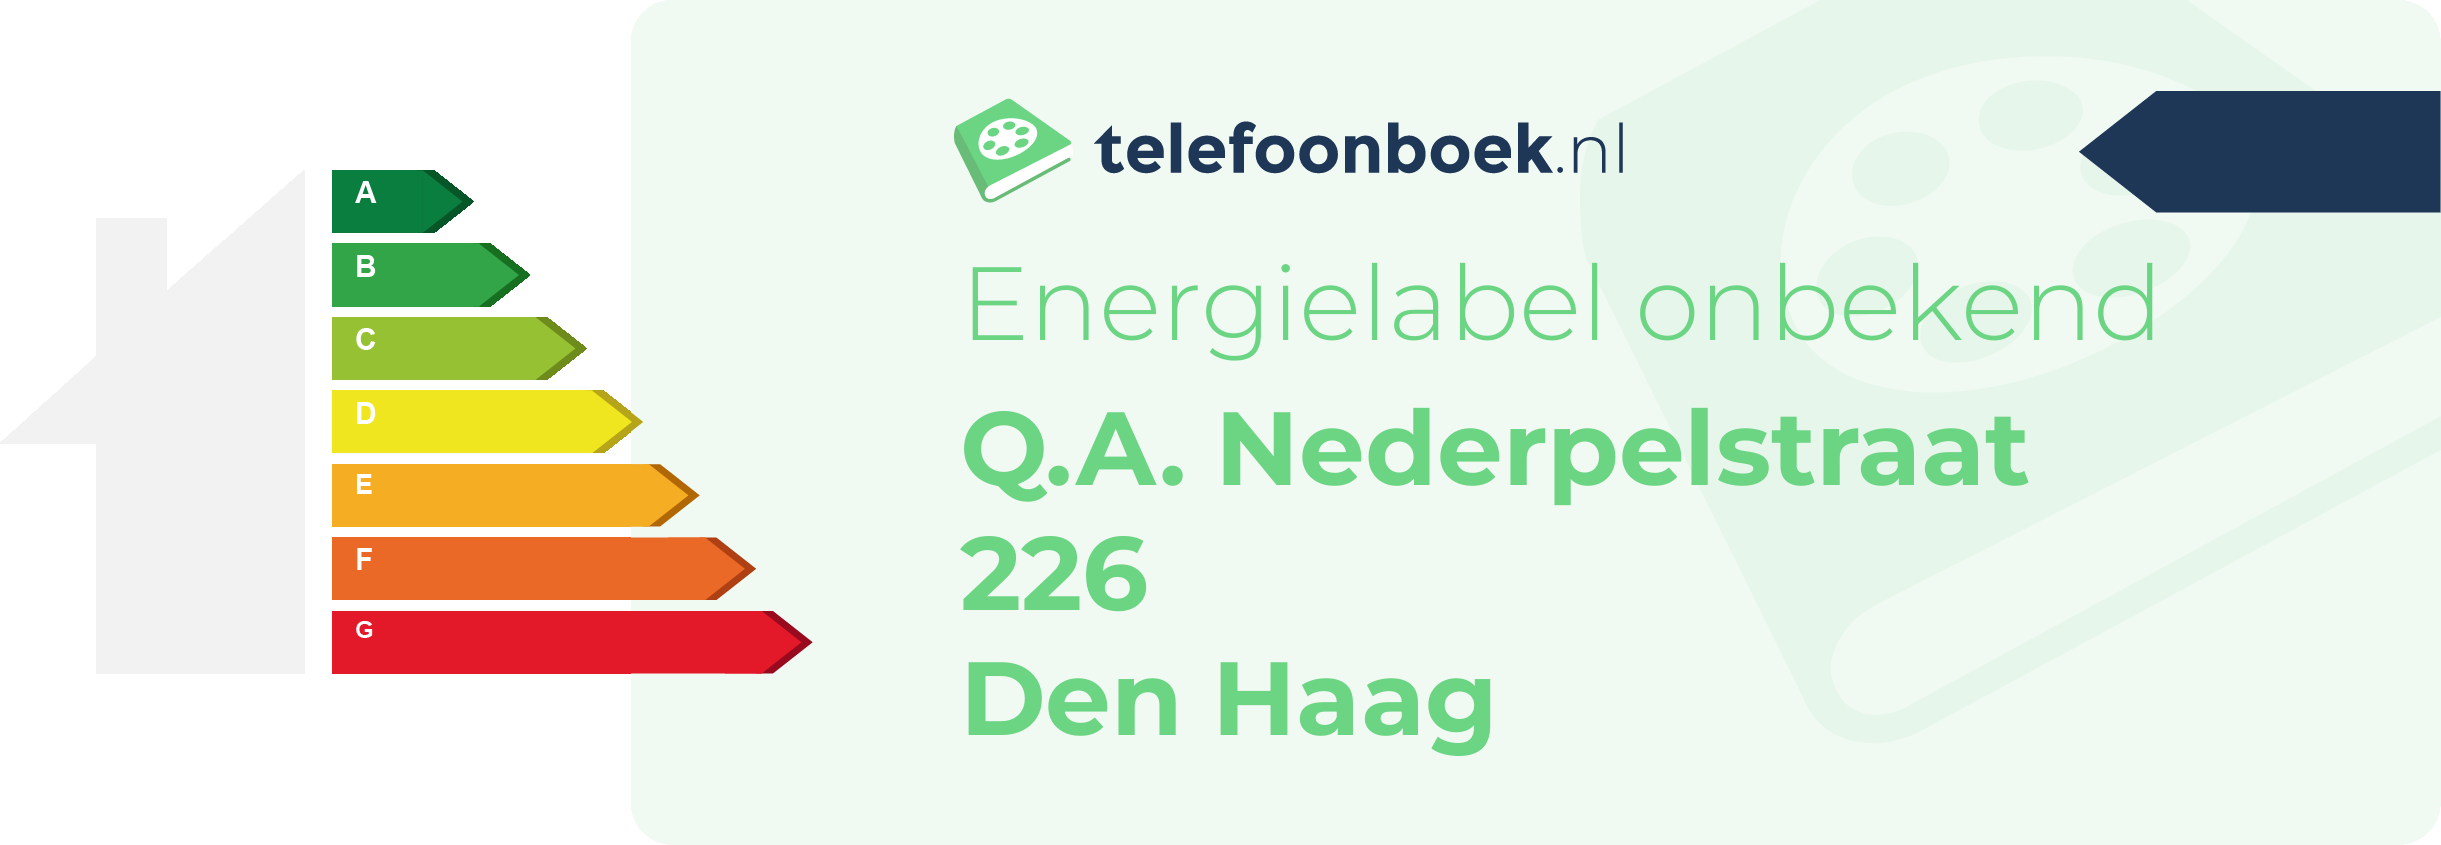 Energielabel Q.A. Nederpelstraat 226 Den Haag